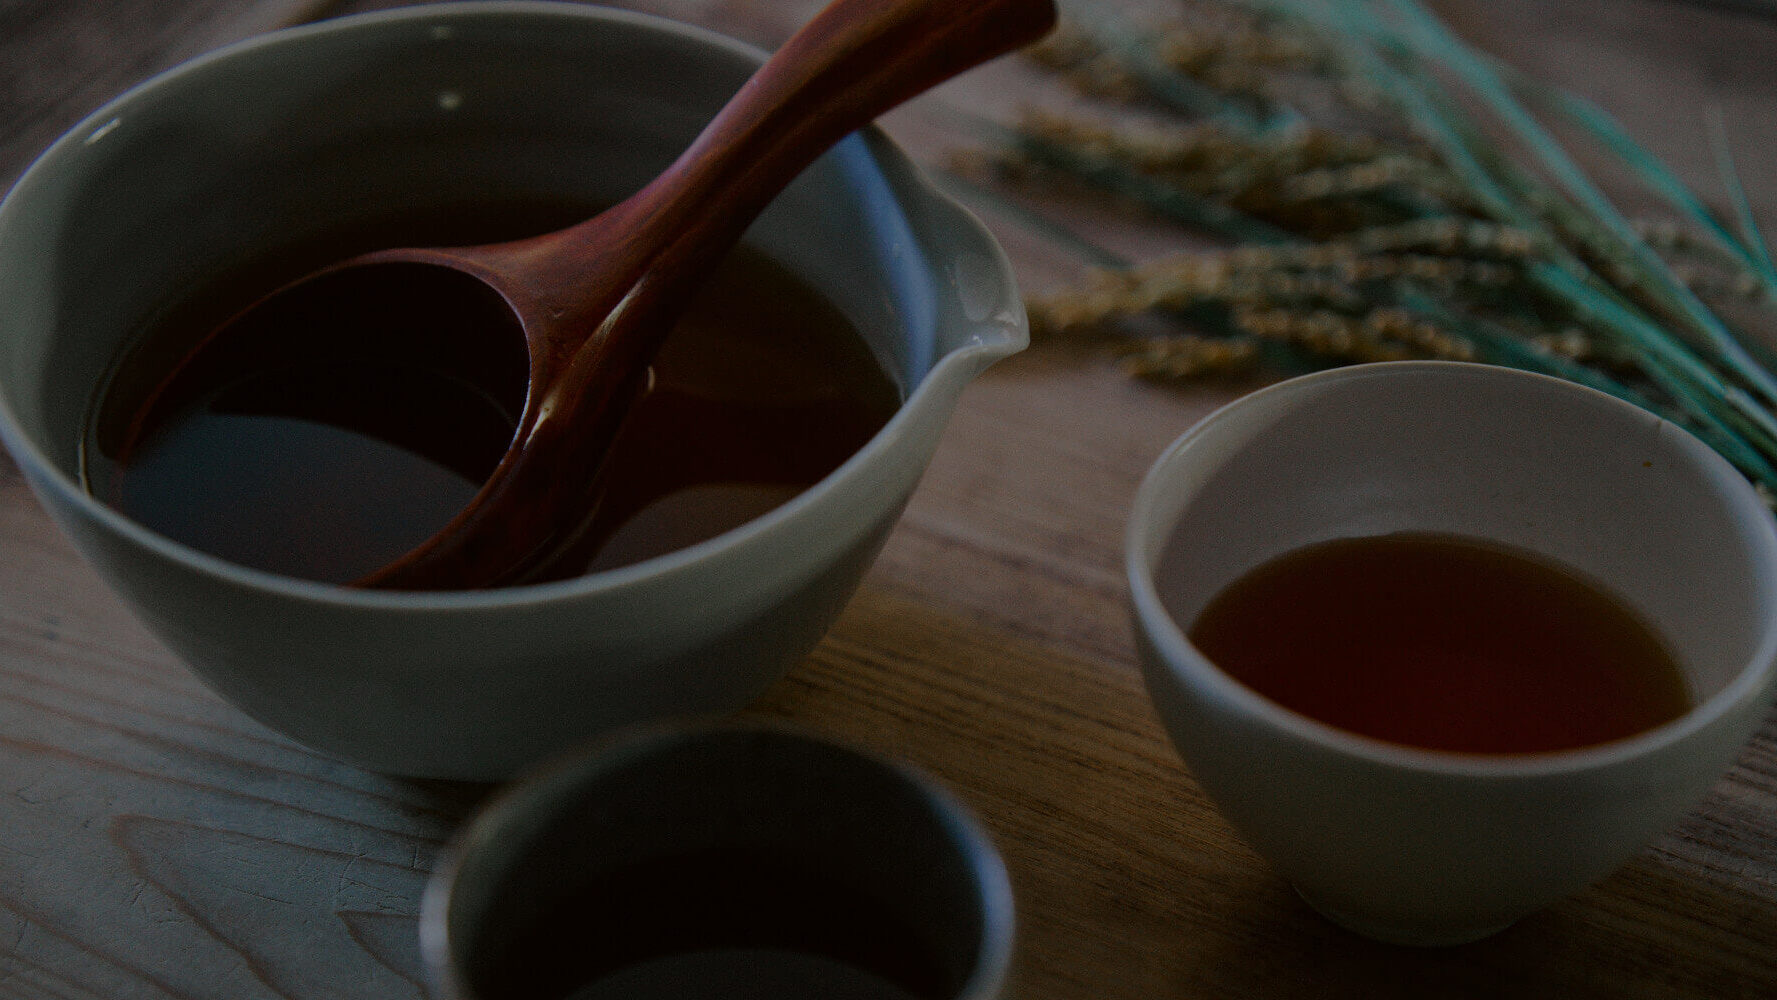 江戸時代の伝統的製法による産土の赤酒